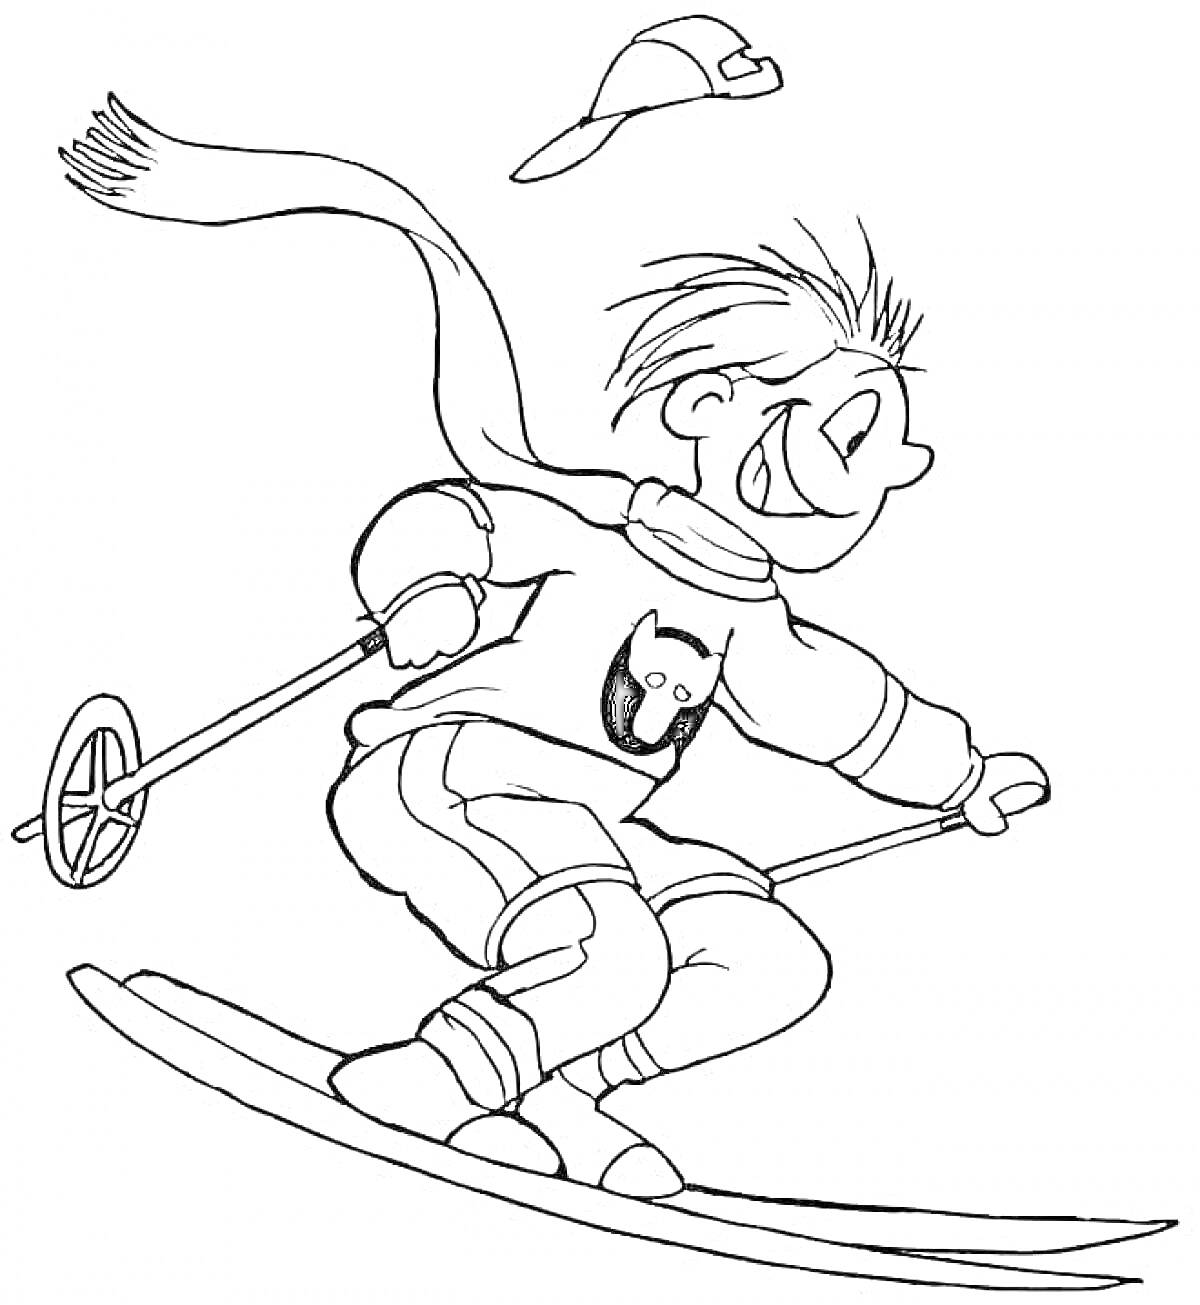 Раскраска Ребенок на лыжах с палками и шапкой